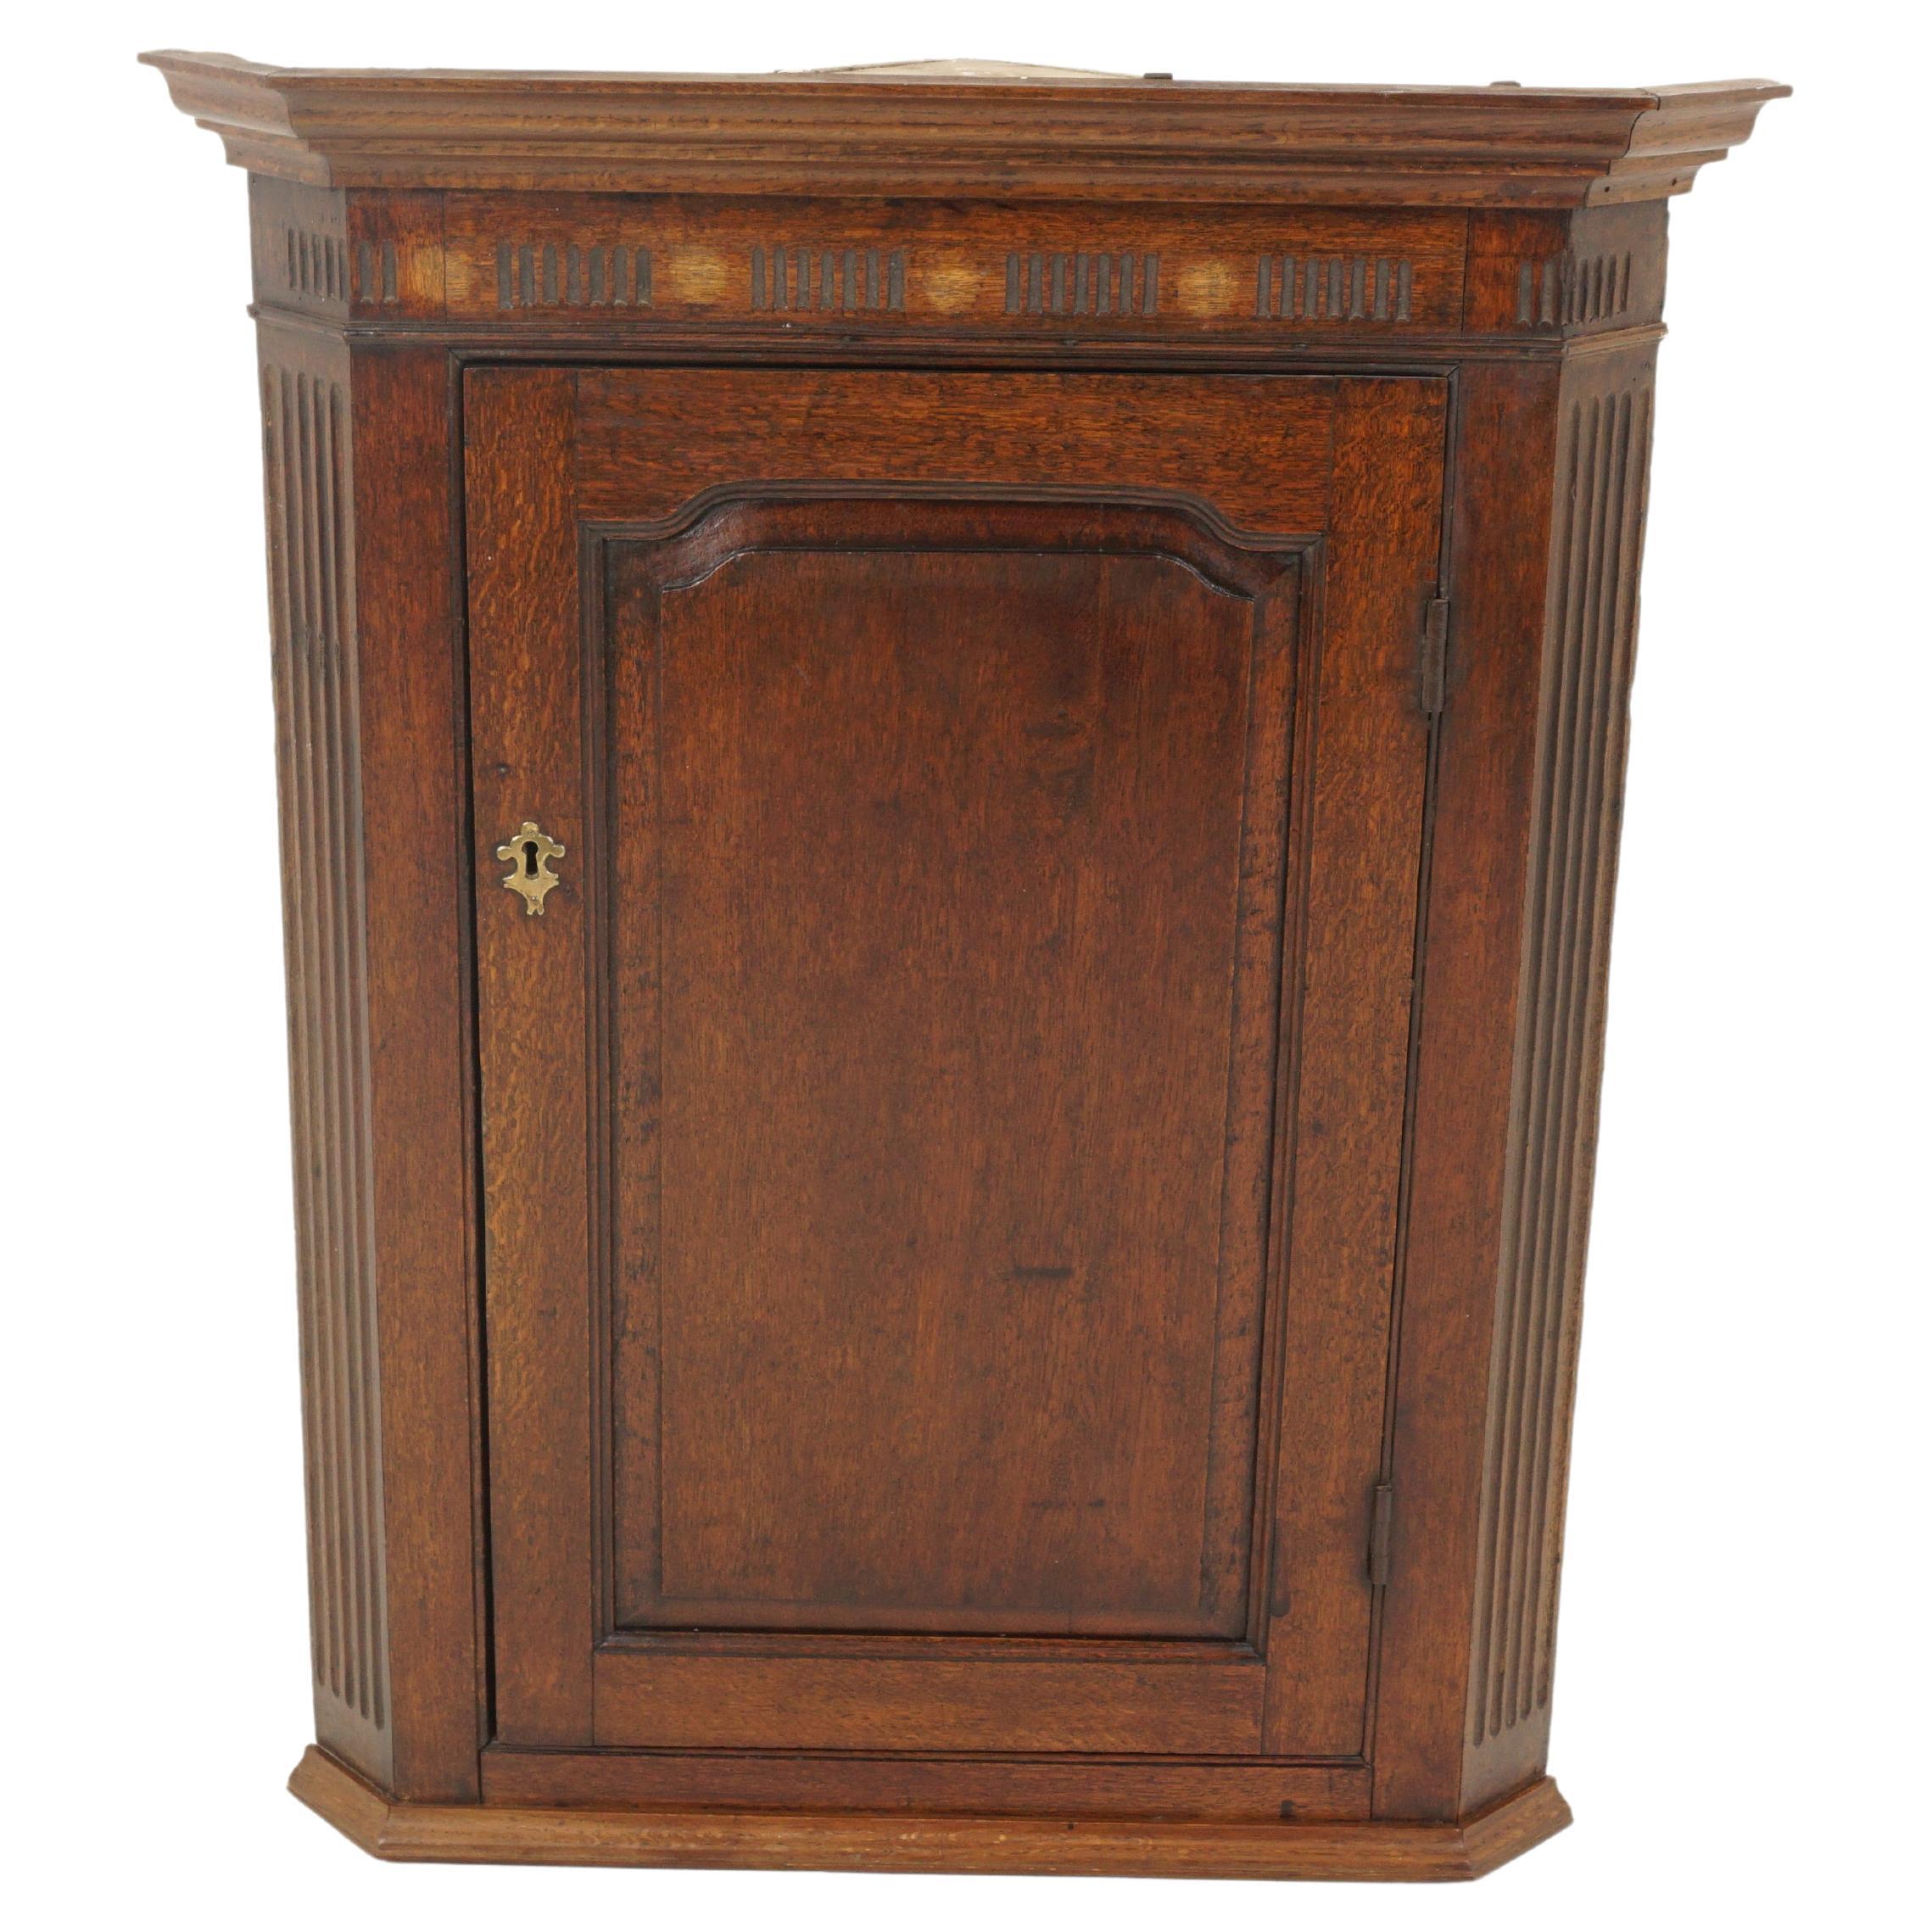 Antique armoire d'angle suspendue, géorgienne, incrustée, chêne, Écosse 1830, H263